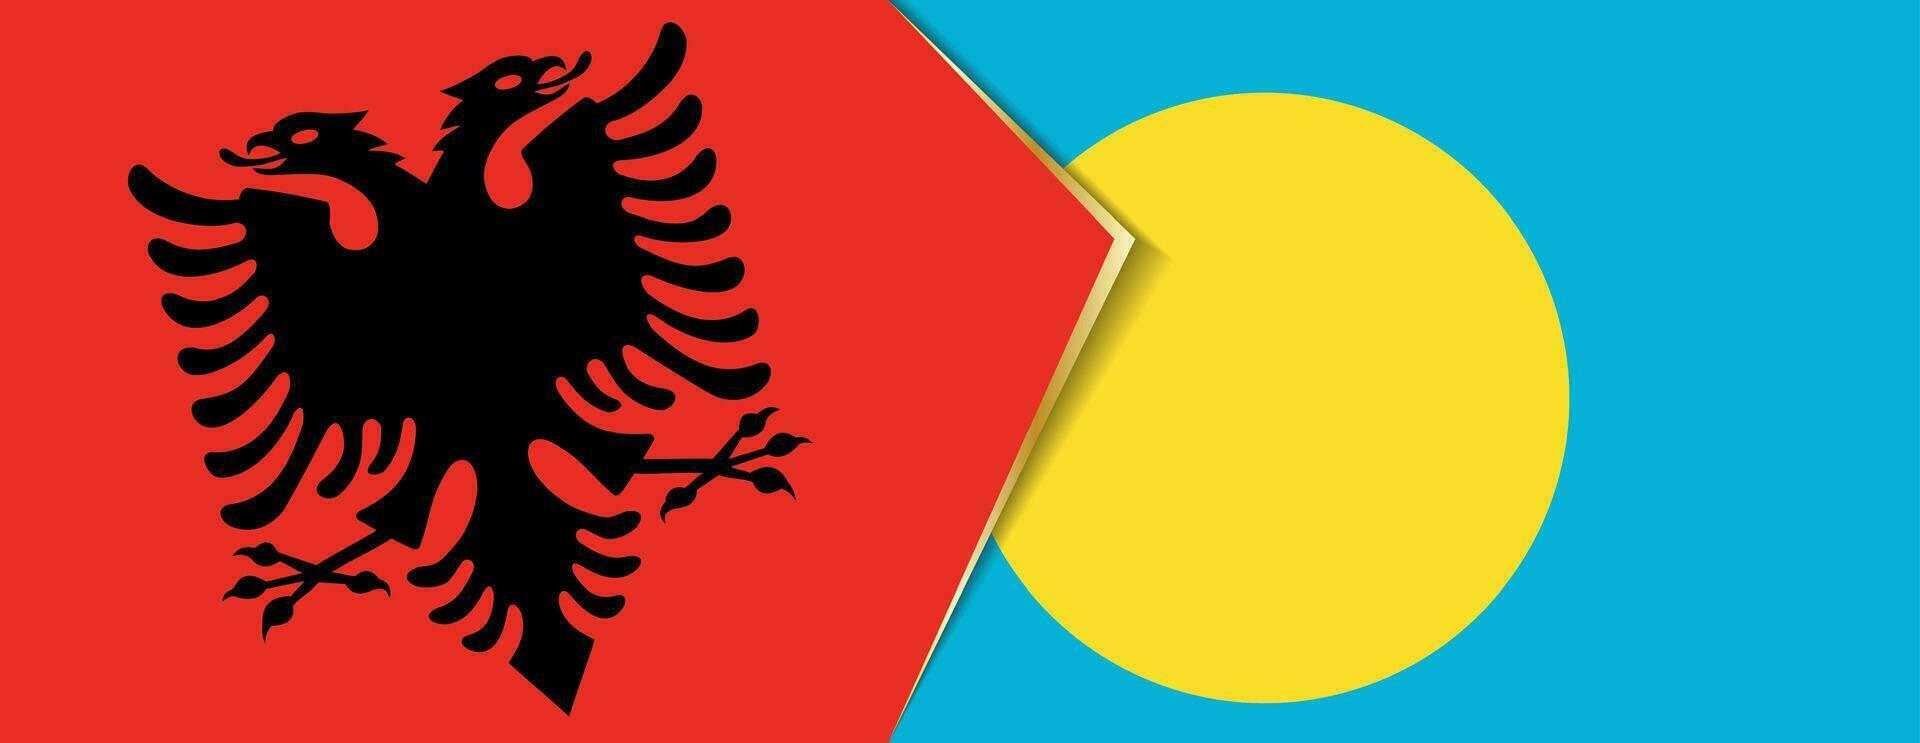 Albanien und Palau Flaggen, zwei Vektor Flaggen.